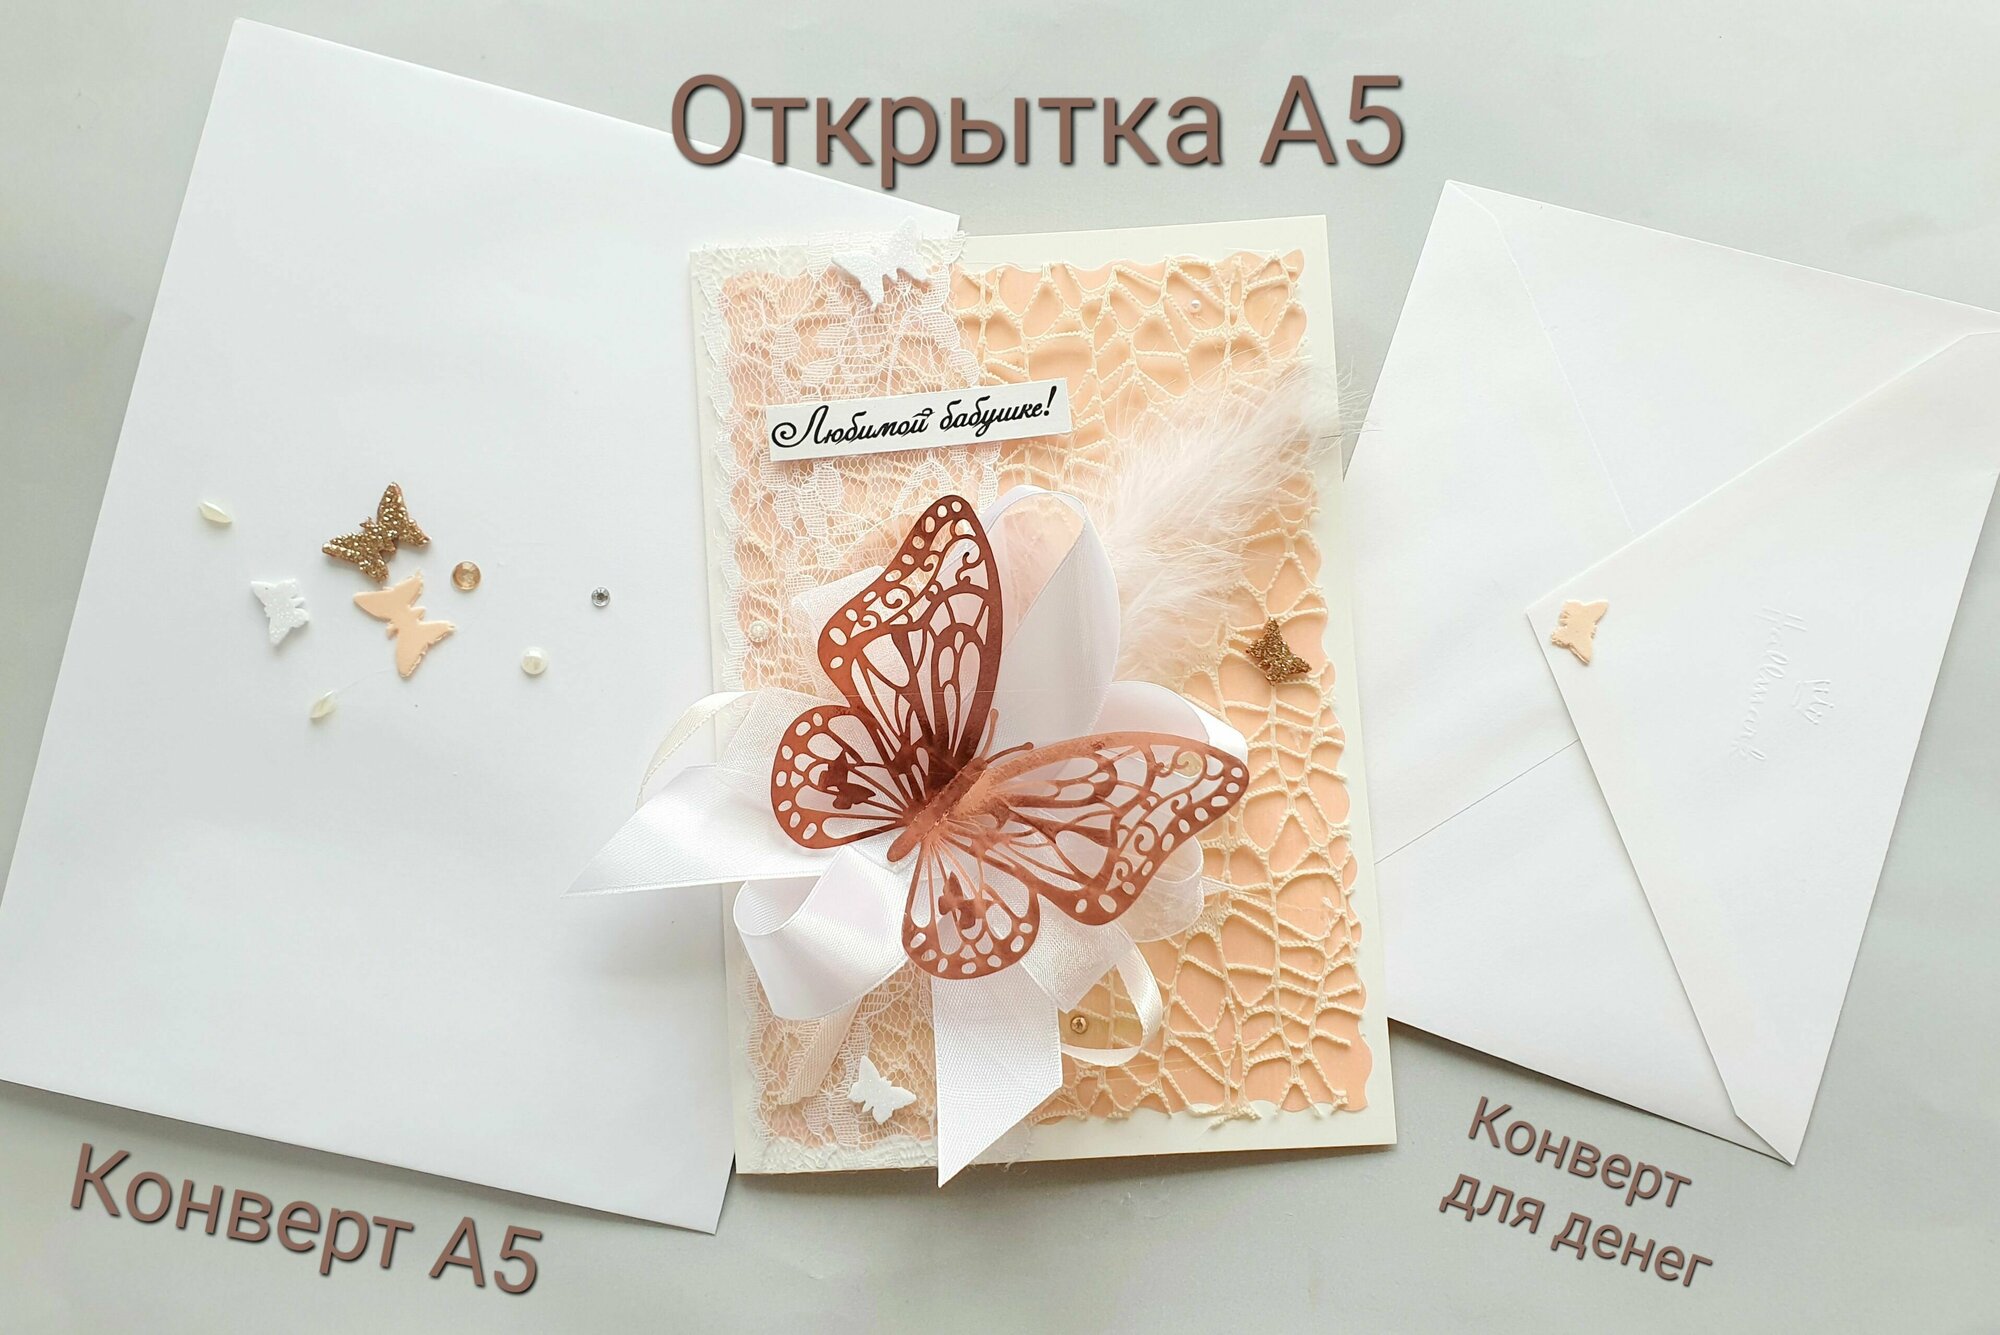 Открытка от дизайнера "Бабушке!", бежево-розовая. +Конверт и конверт для денег